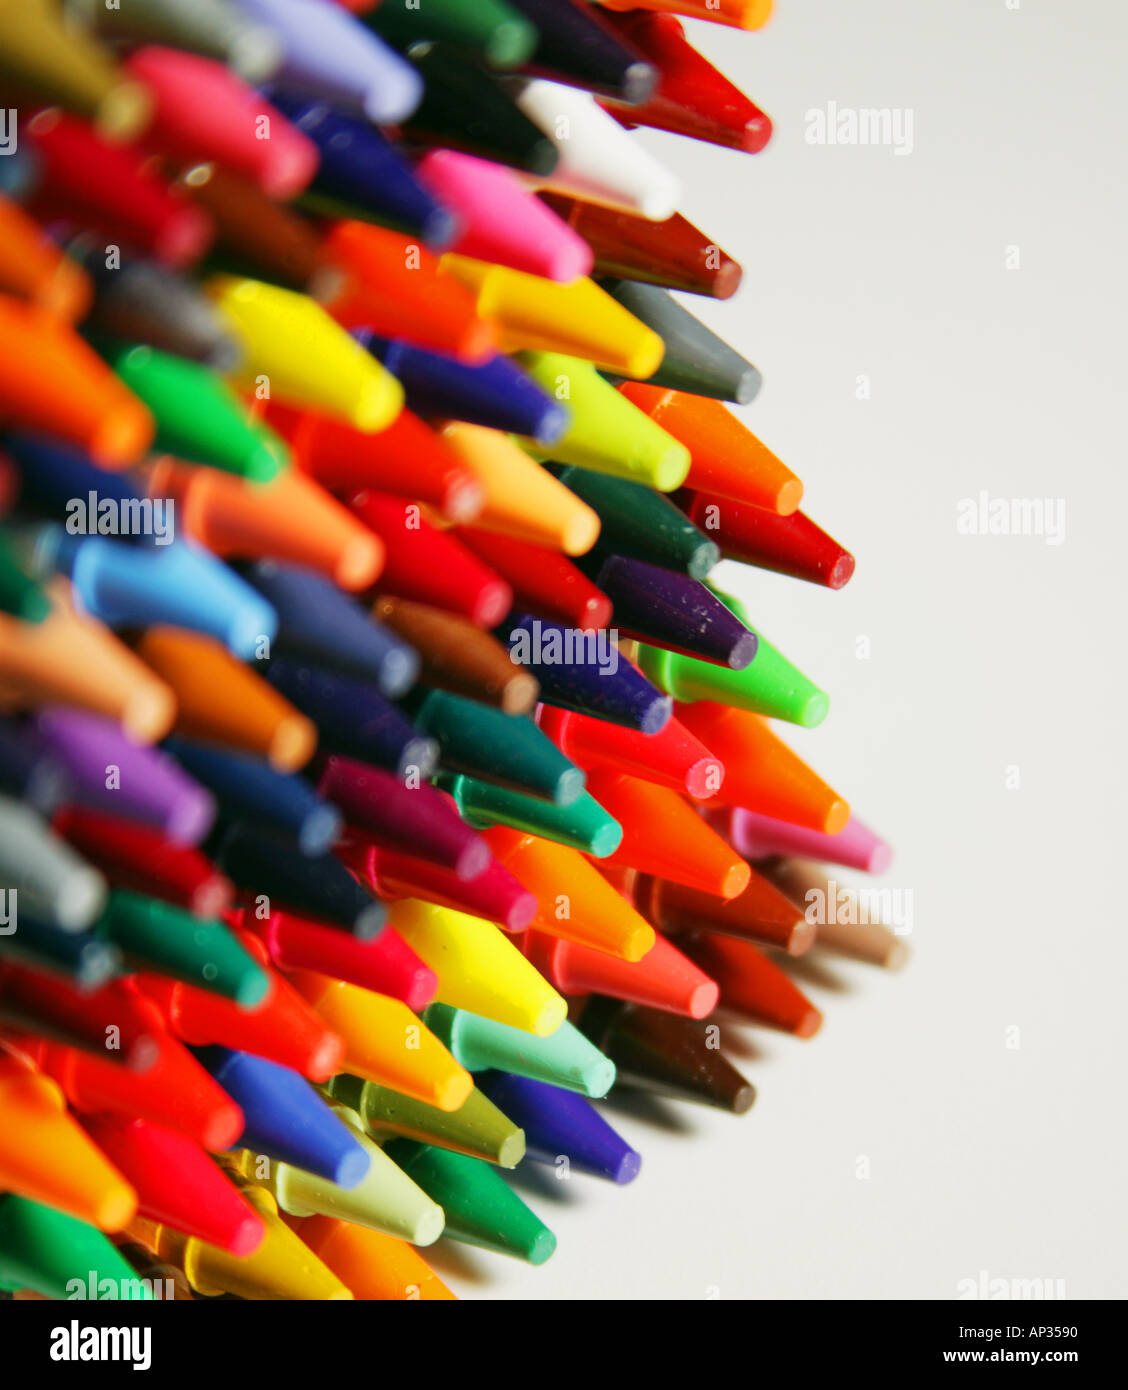 Les crayons de cire de différentes couleurs. Banque D'Images